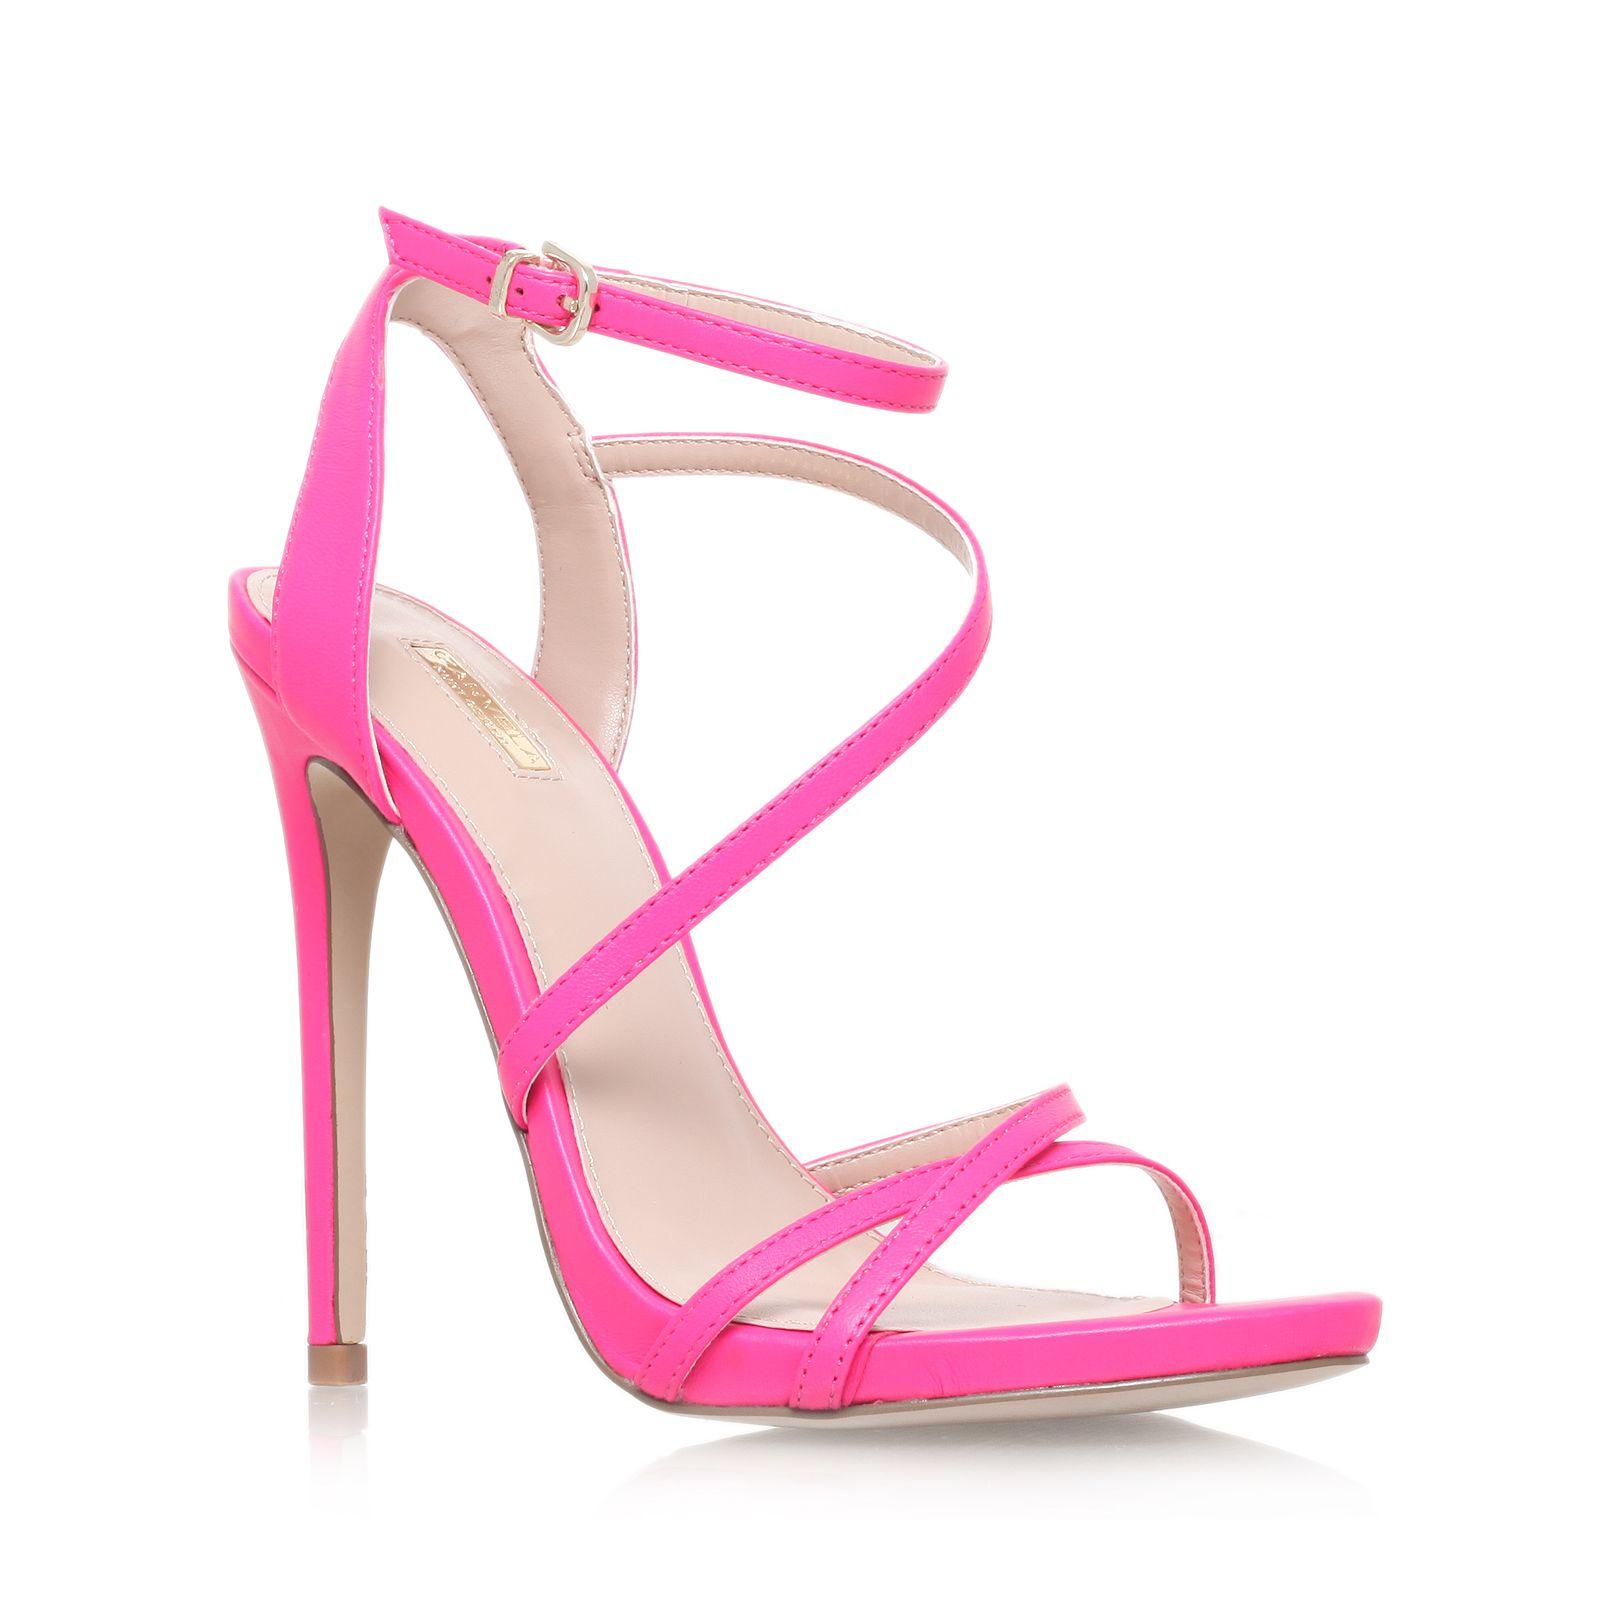 Carvela Kurt Geiger Georgia High Heel Strappy Sandals in Pink - Lyst